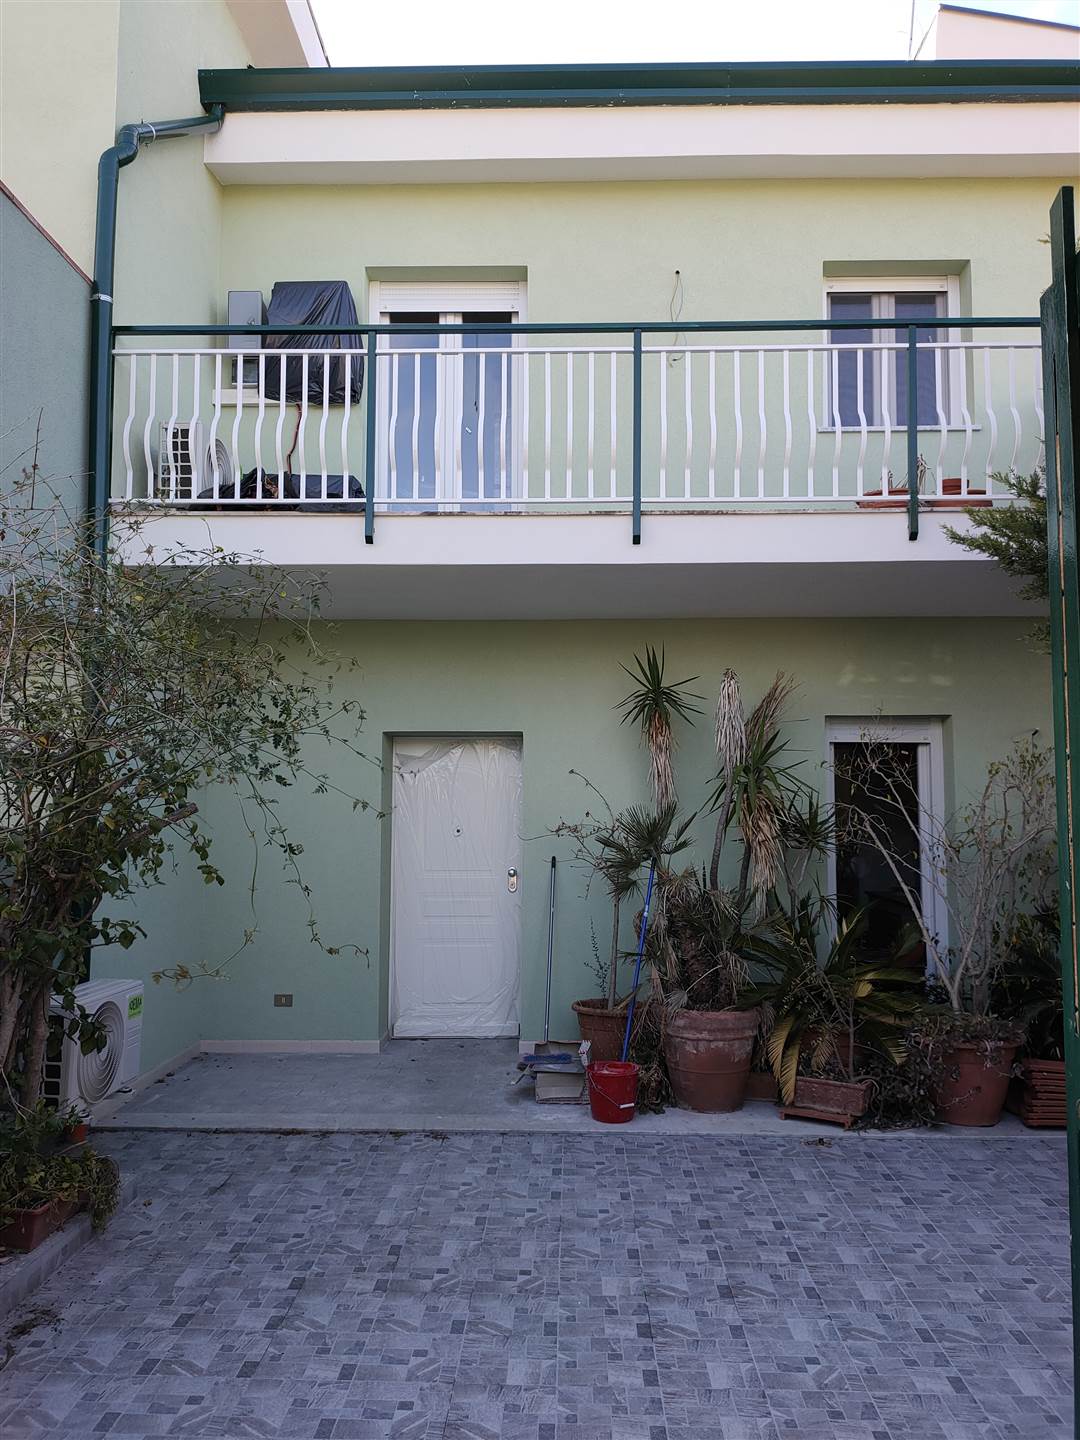 Villa Bifamiliare in vendita a Altavilla Milicia, 4 locali, zona Località: SPERONE, prezzo € 180.000 | PortaleAgenzieImmobiliari.it